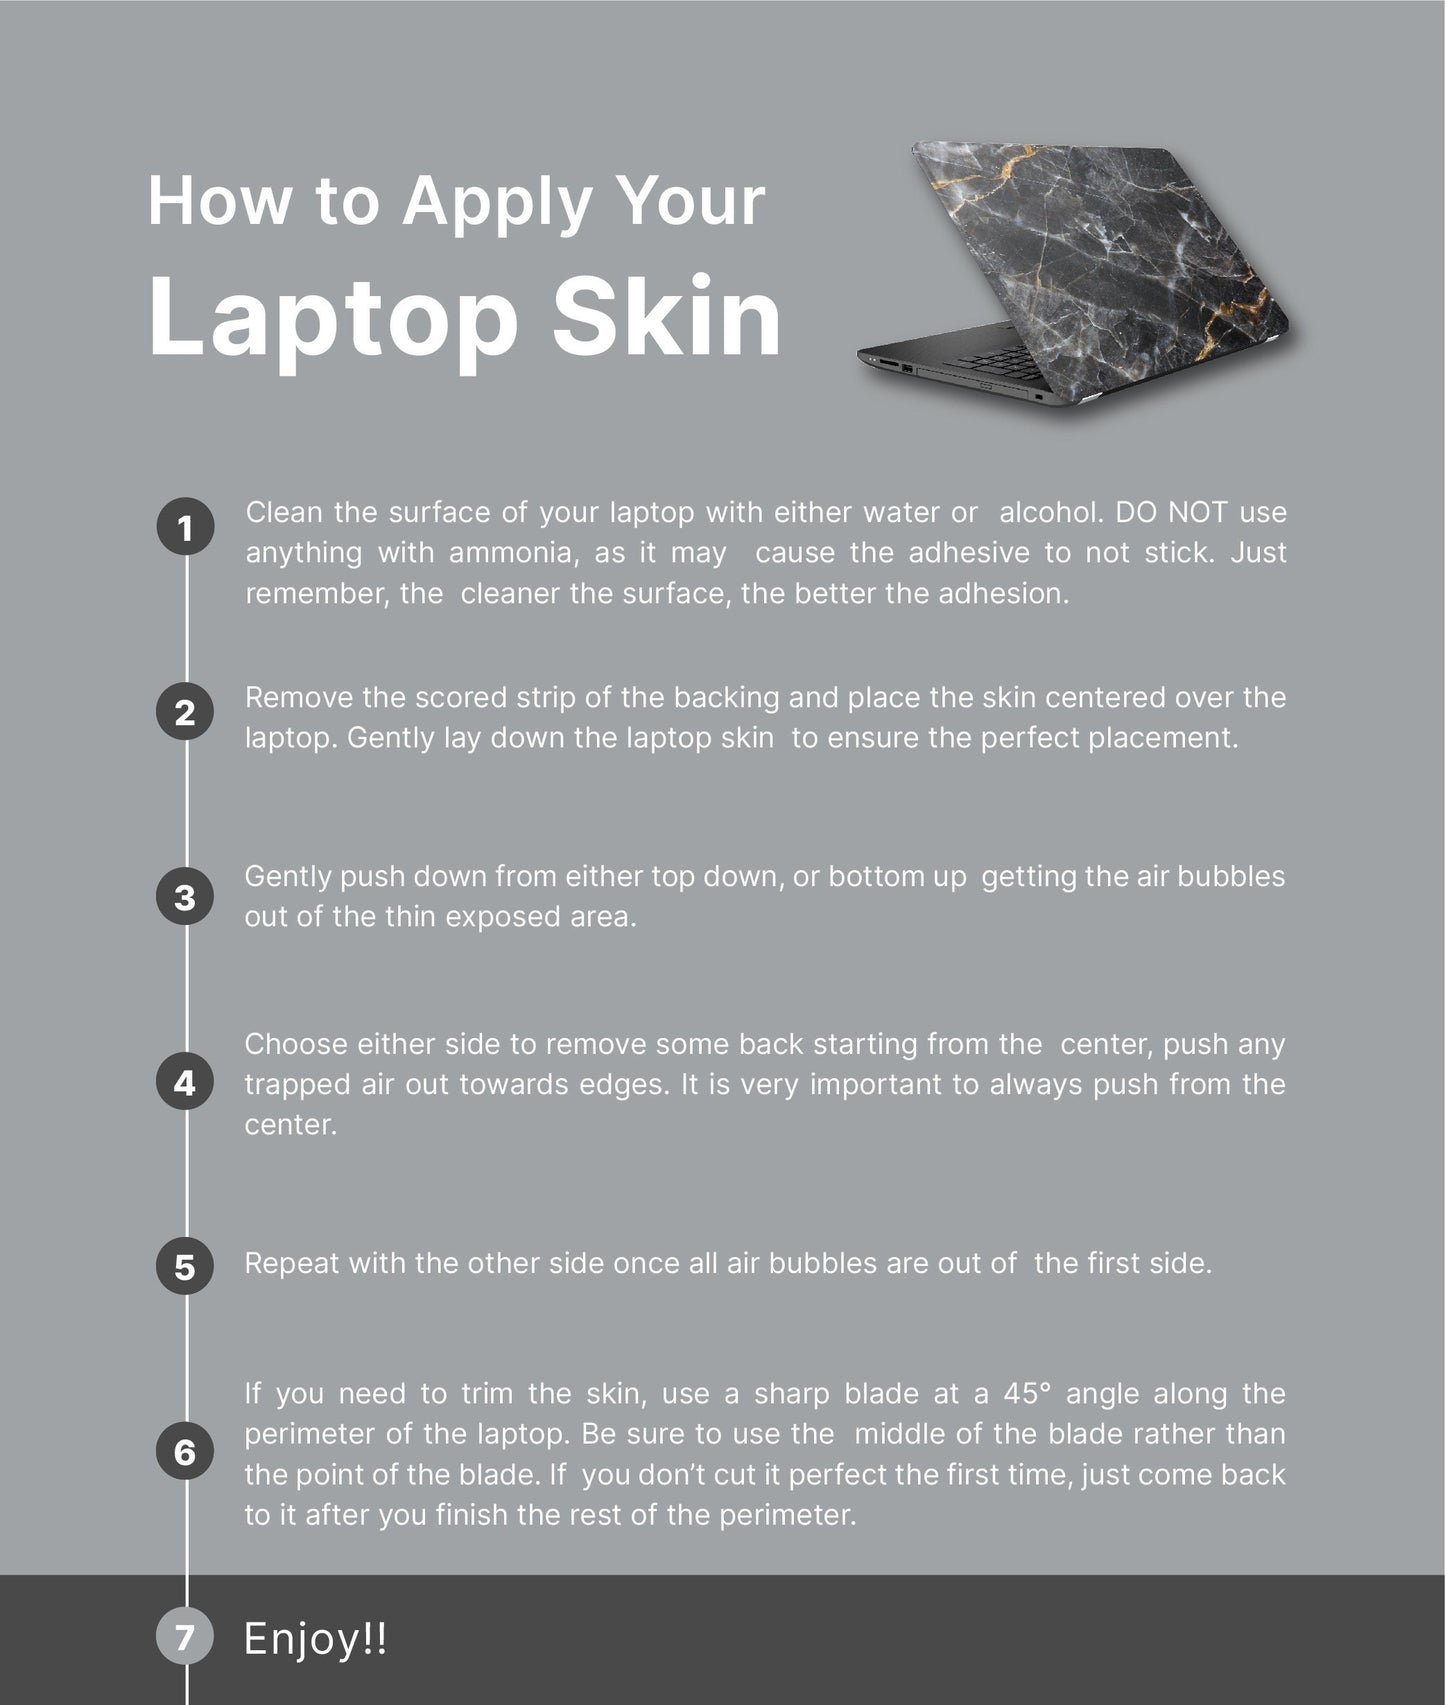 Mountains Laptop Skin, Laptop Cover, Laptop Skins, Removable Laptop Skins, Laptop Decal, Customized Laptop Skin, Laptop Stickers 178